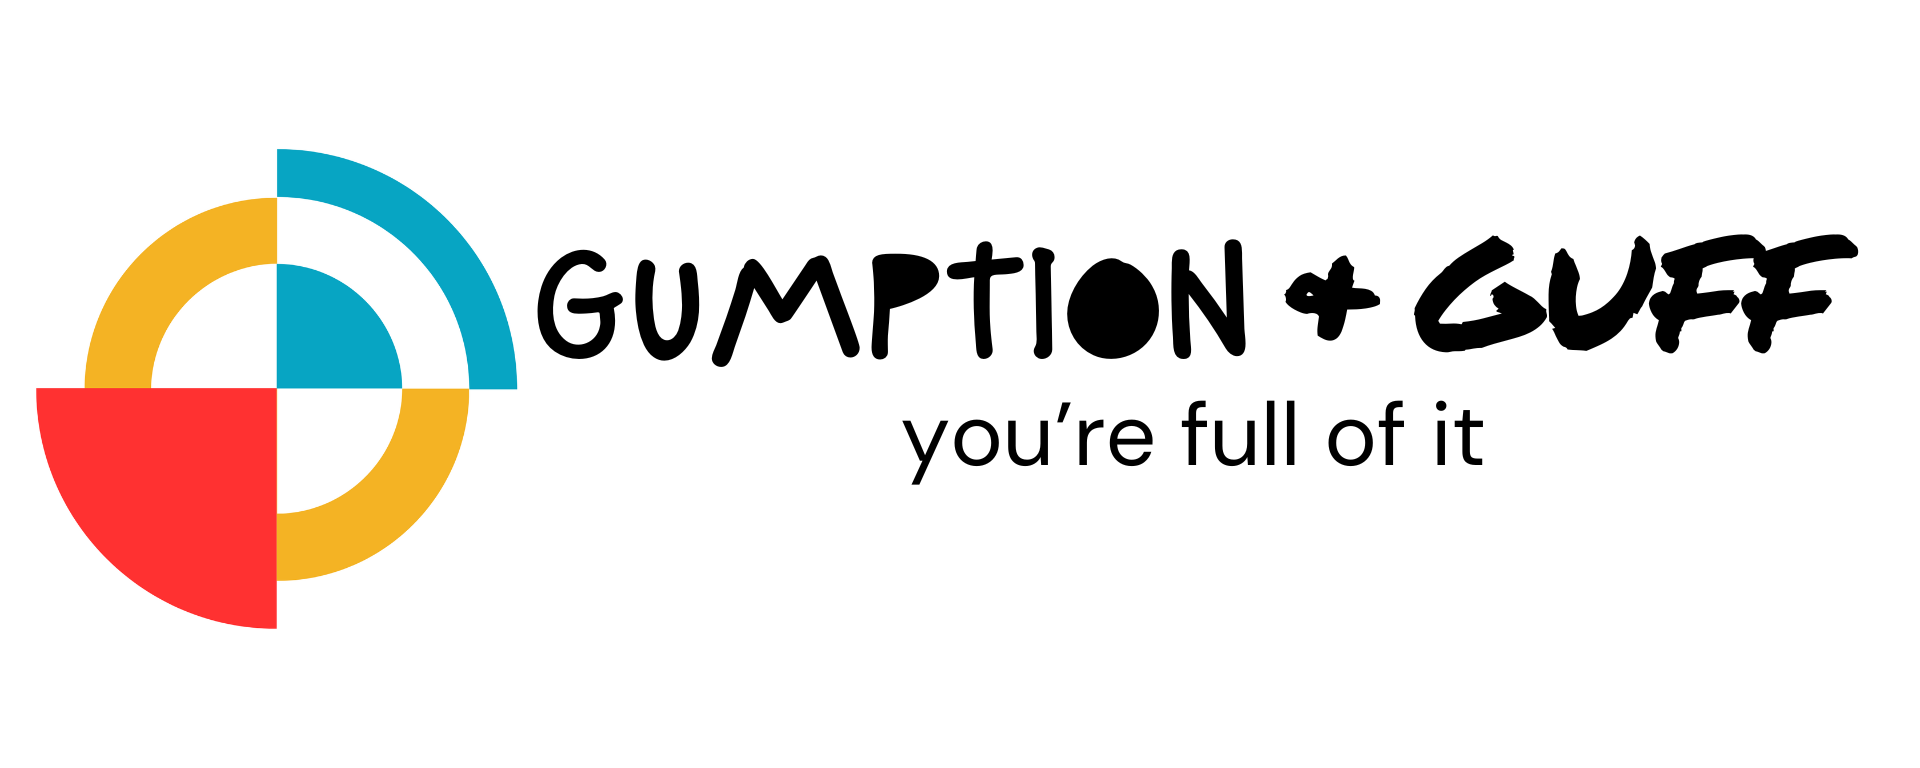 Gumption & Guff